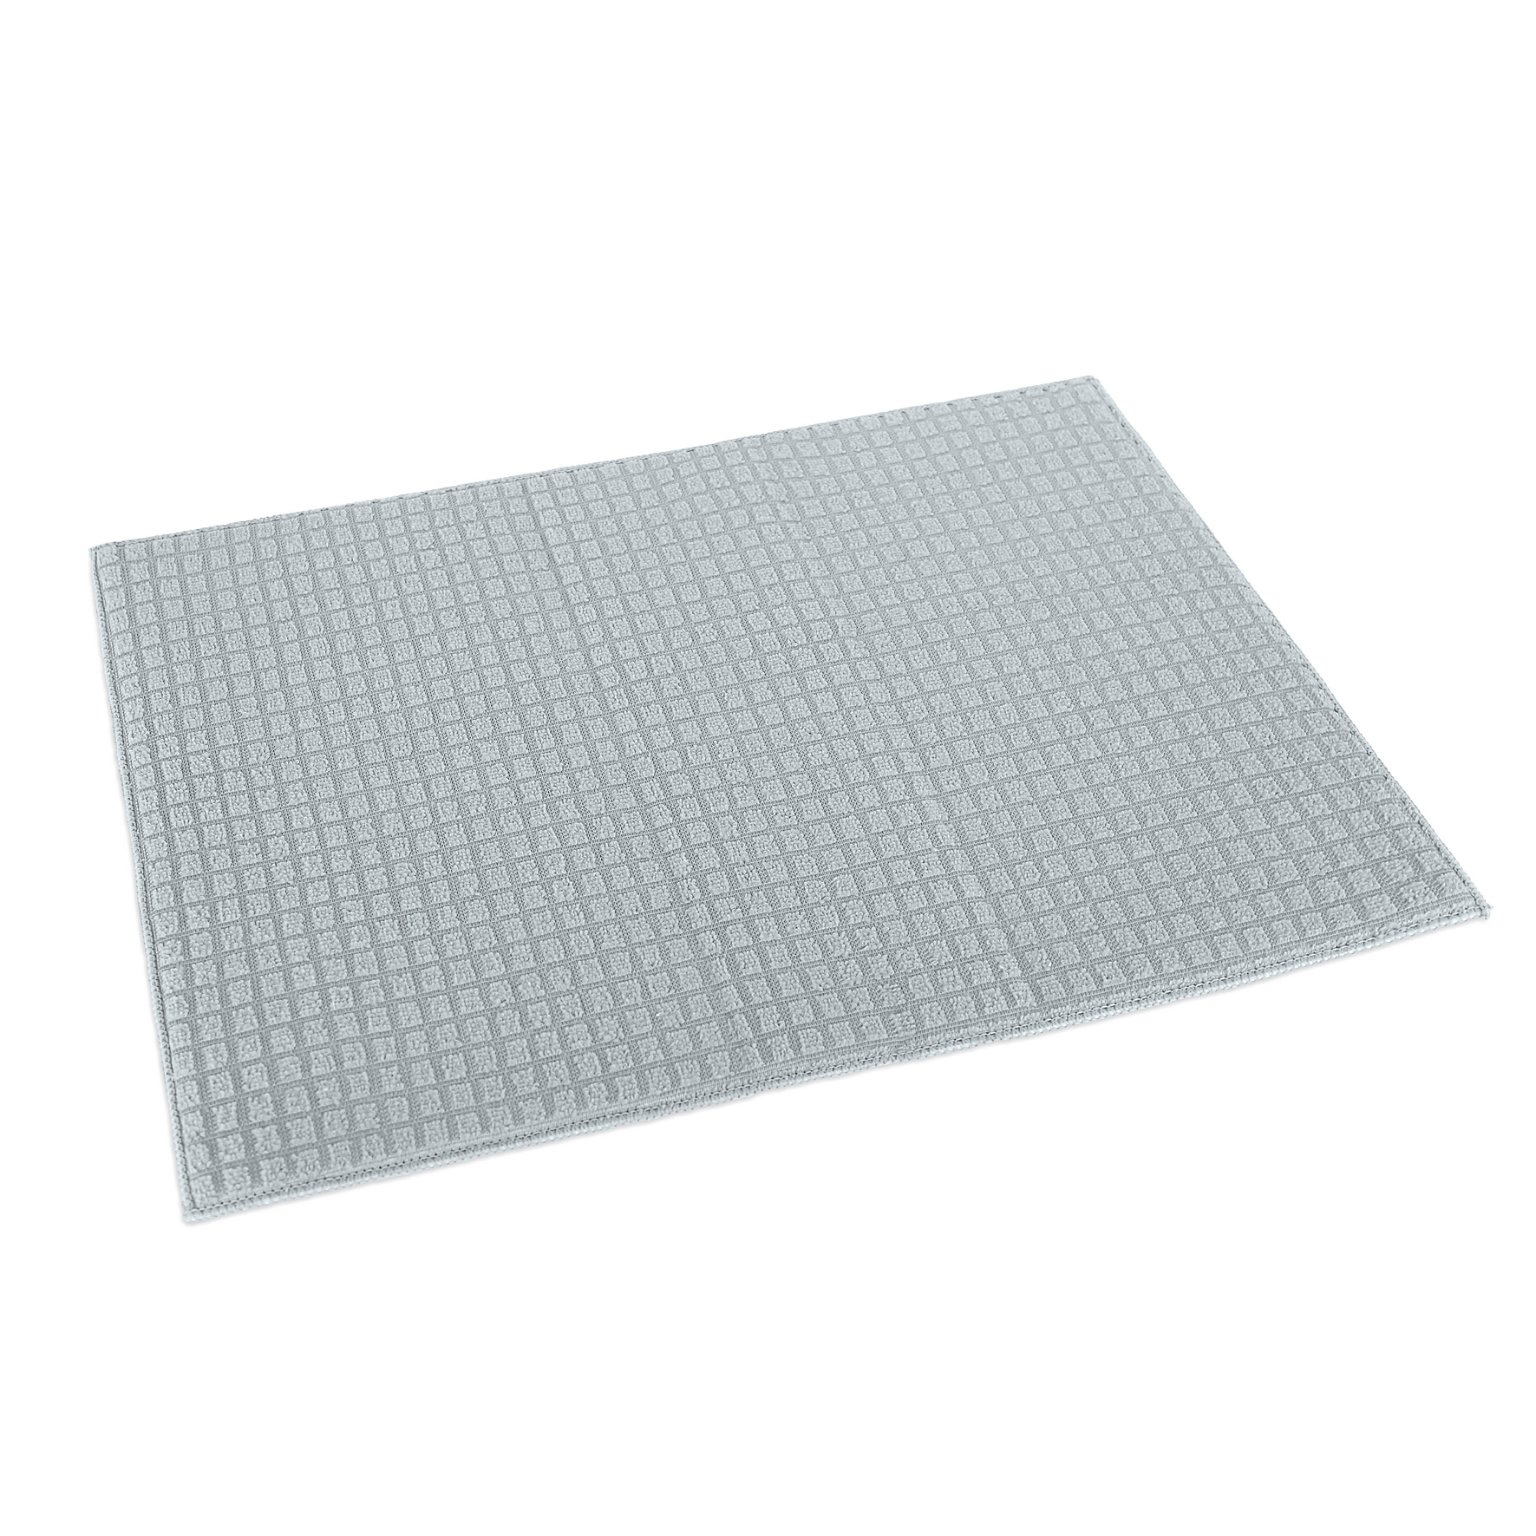 Indų kilimėlis 38x50 cm, 100% poliesteris, 95 g/vnt., vienspalvis, sp. pilkos sp. 56